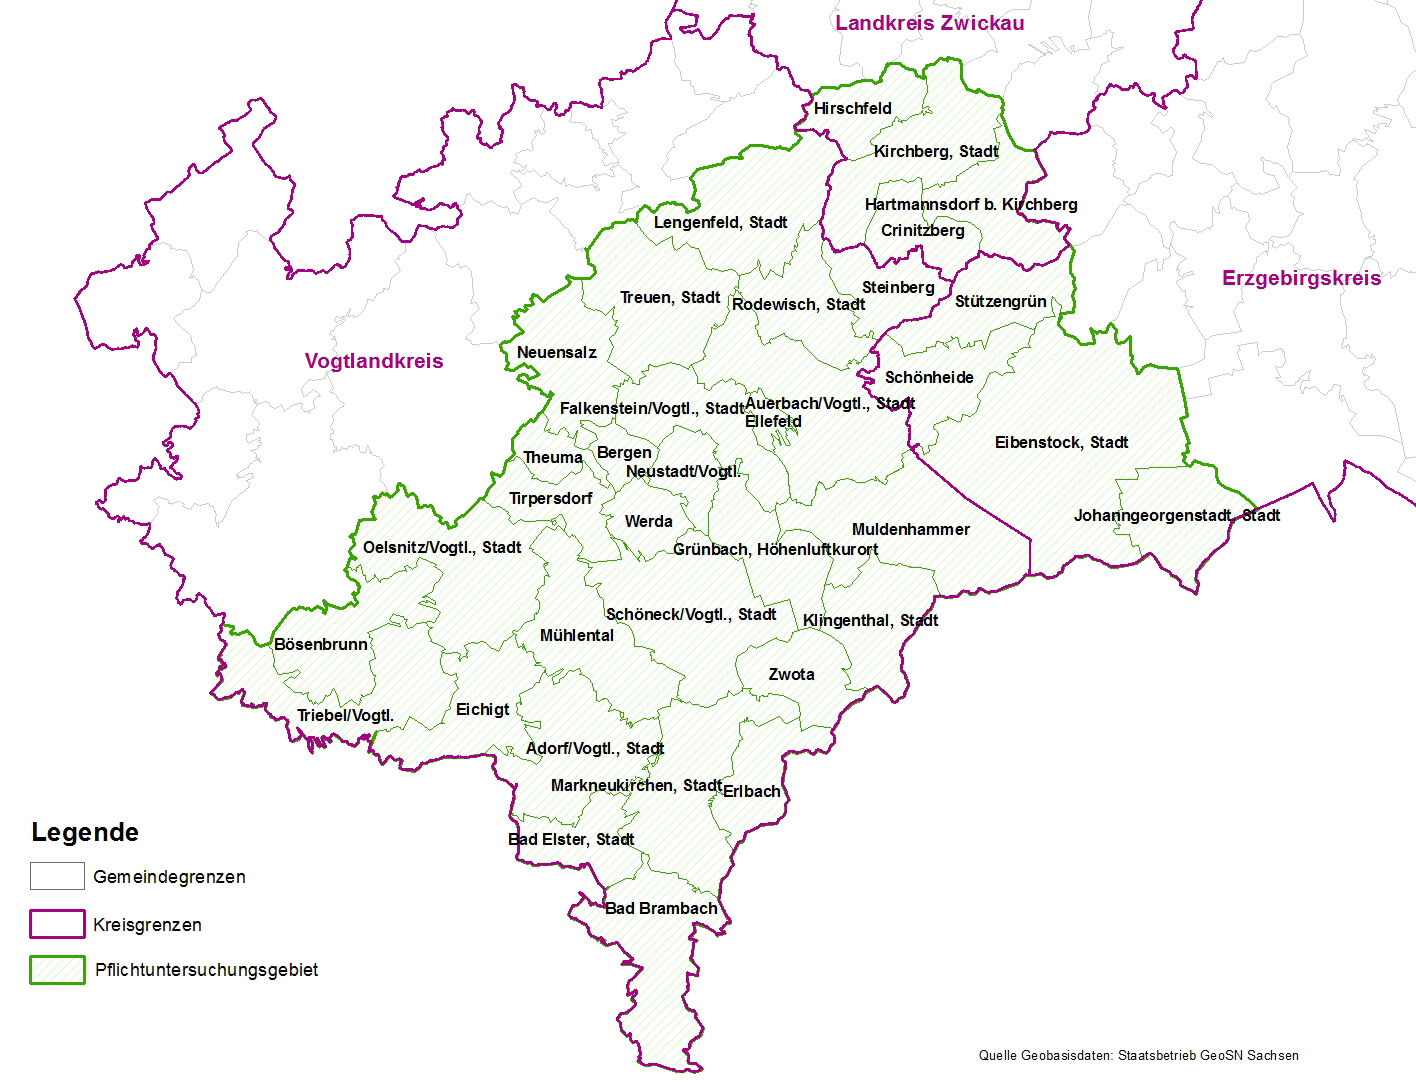 Landkarte mit Gemeinde-, Und Kreisgrenzen und Kennzeichnung des Untersuchungsgebietes